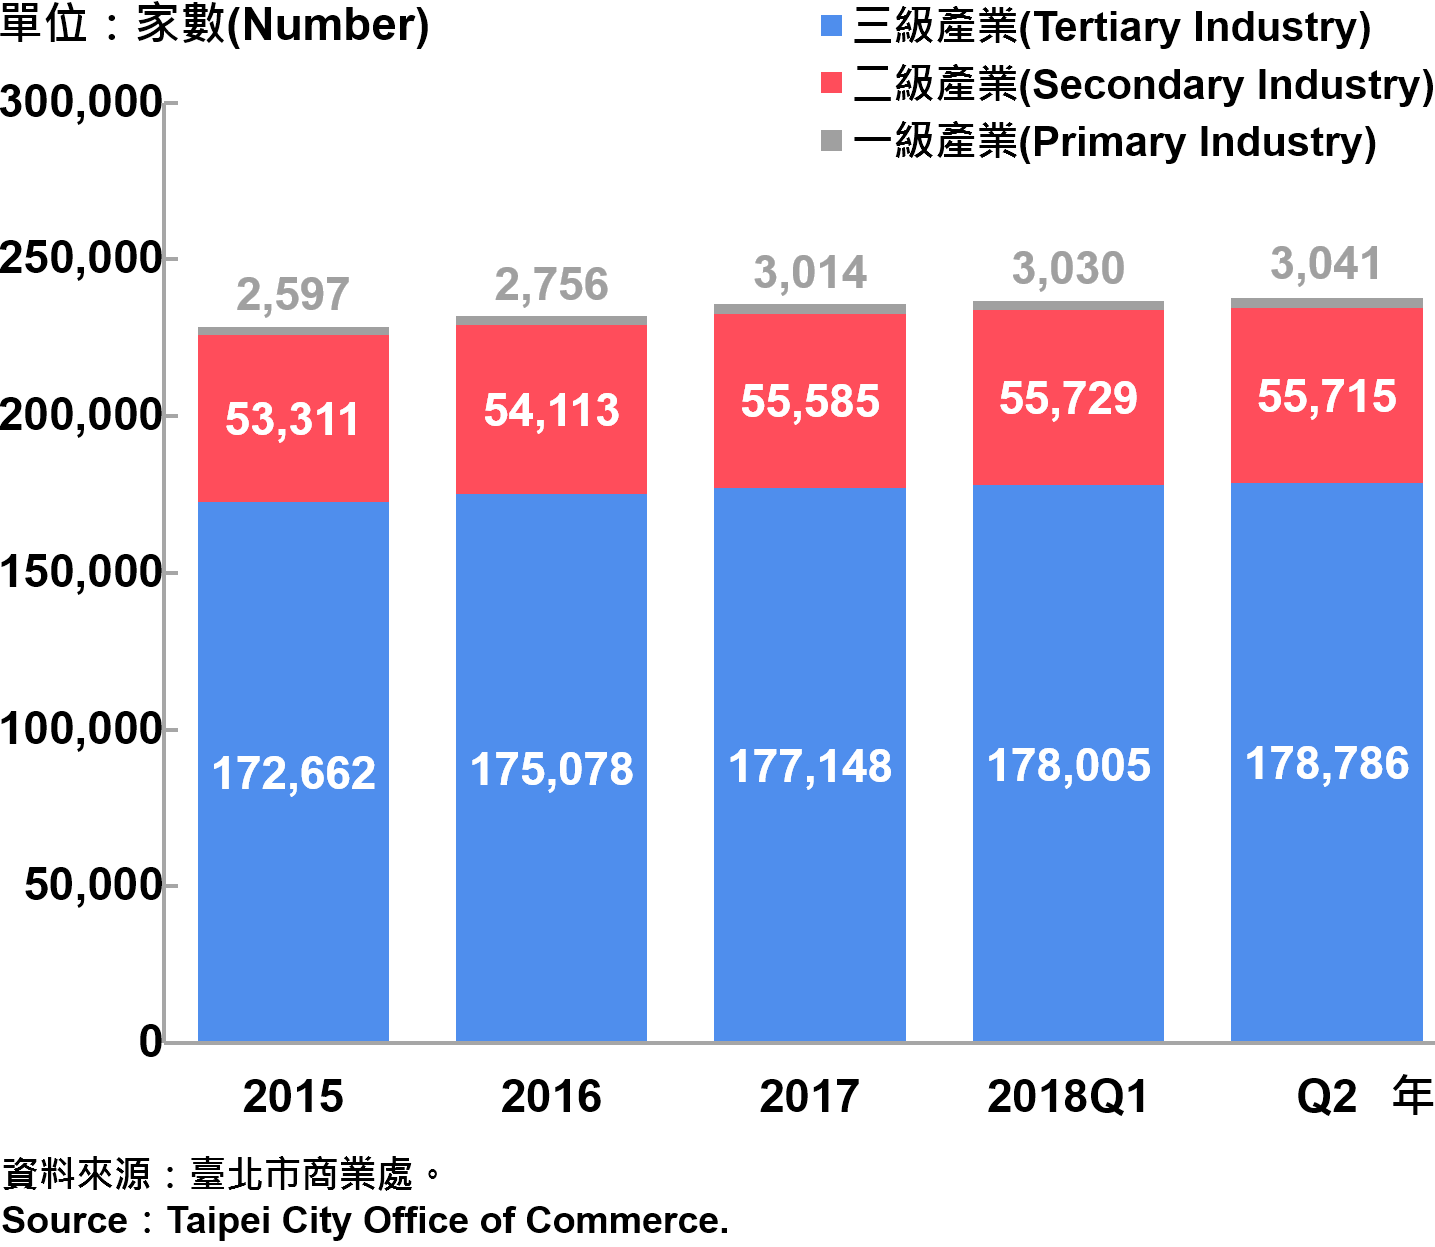 臺北市一二三級產業登記家數—2018Q2 Number of Primary , Secondary and Tertiary Industry in Taipei City—2018Q2